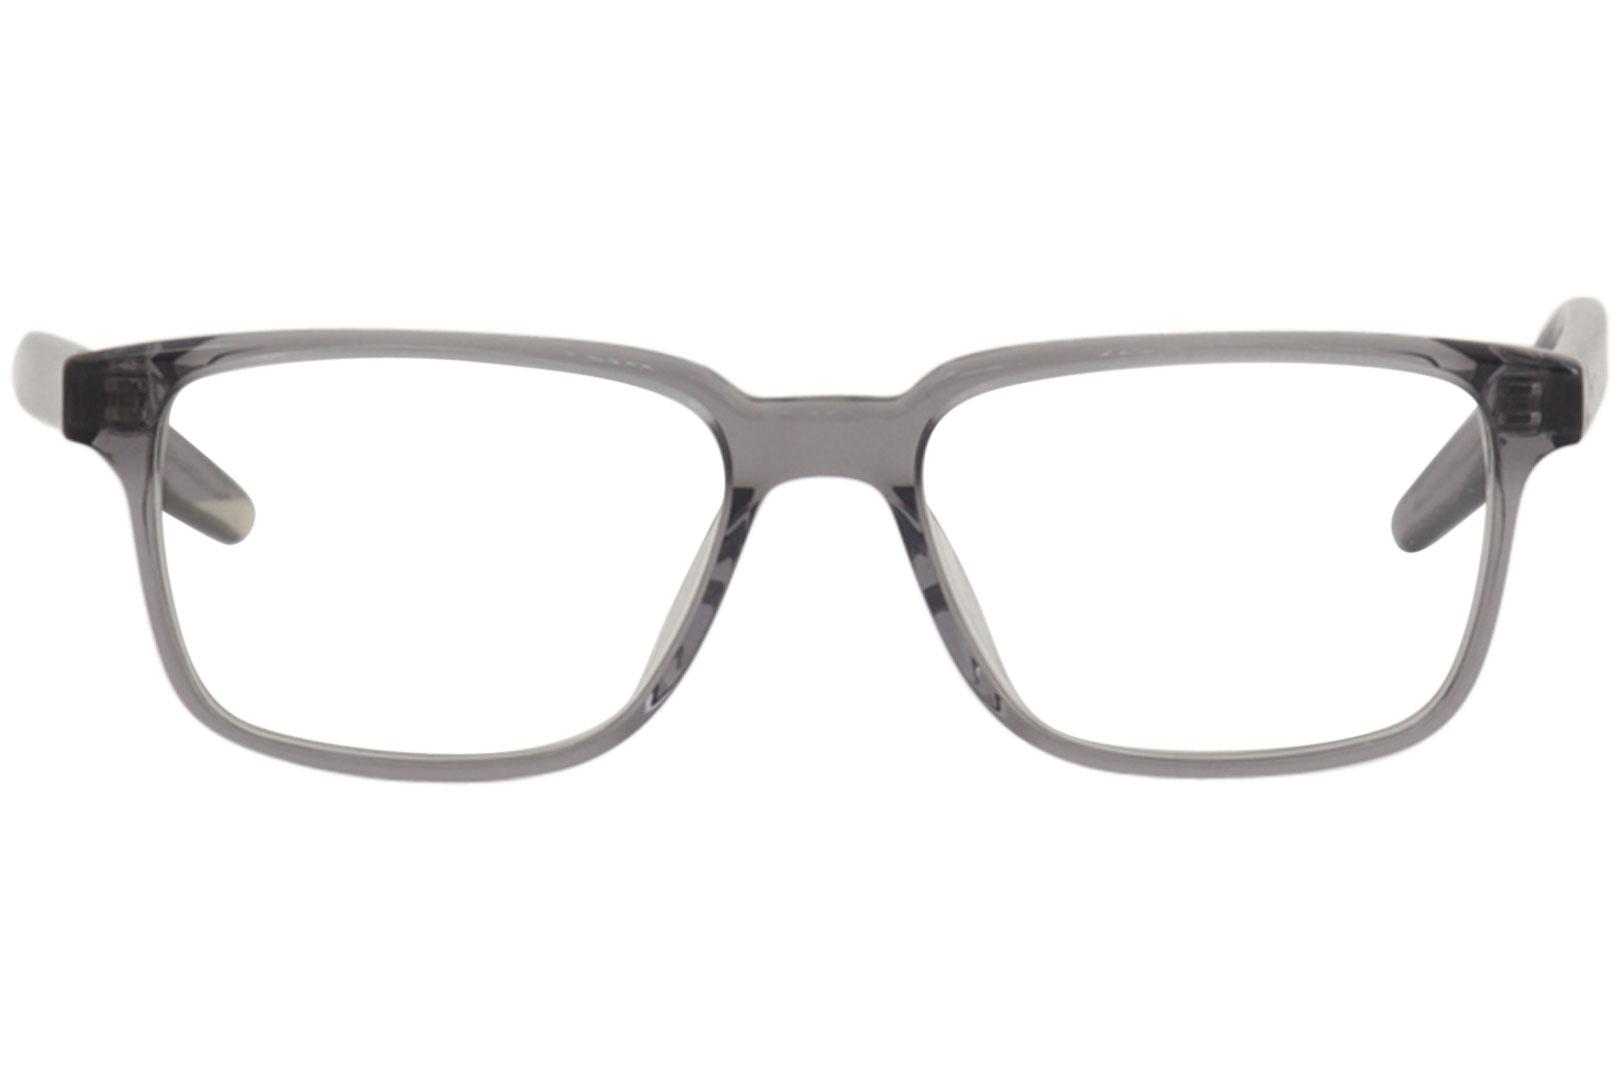 Nike Men's Eyeglasses KD74 KD/74 030 Dark Grey Full Rim Optical Frame 52mm - image 2 of 5